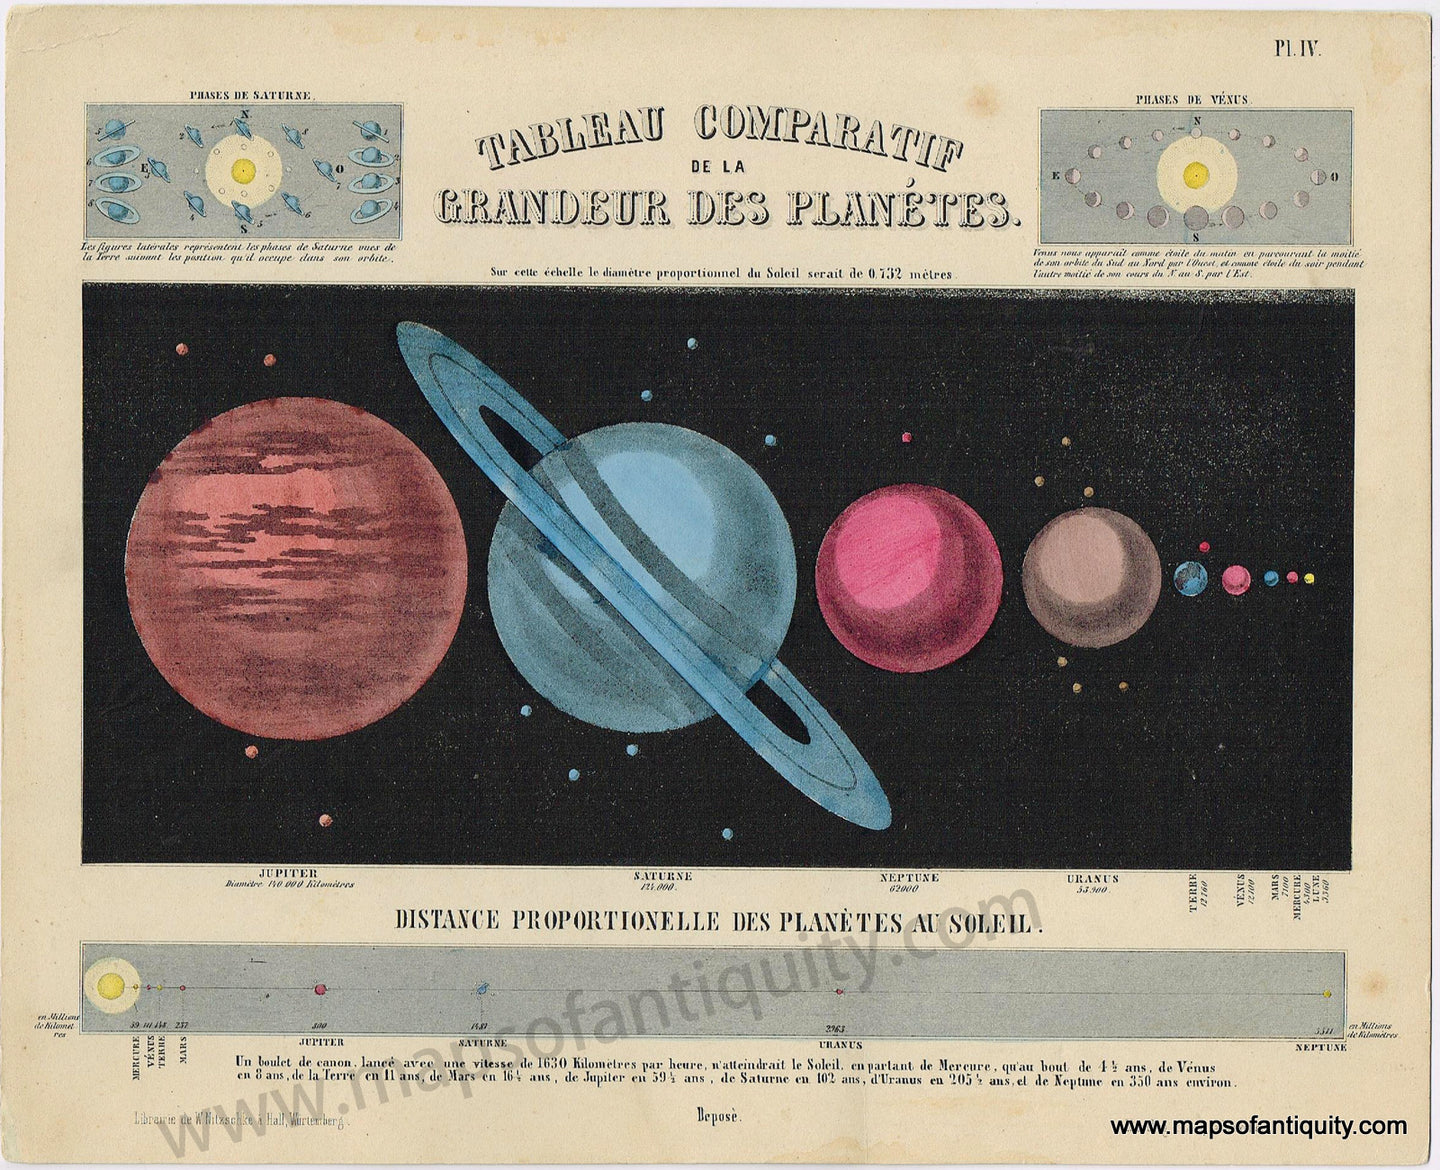 Antique-Map-Vergleichende-Darstellung-der-Grosse-der-Planeten